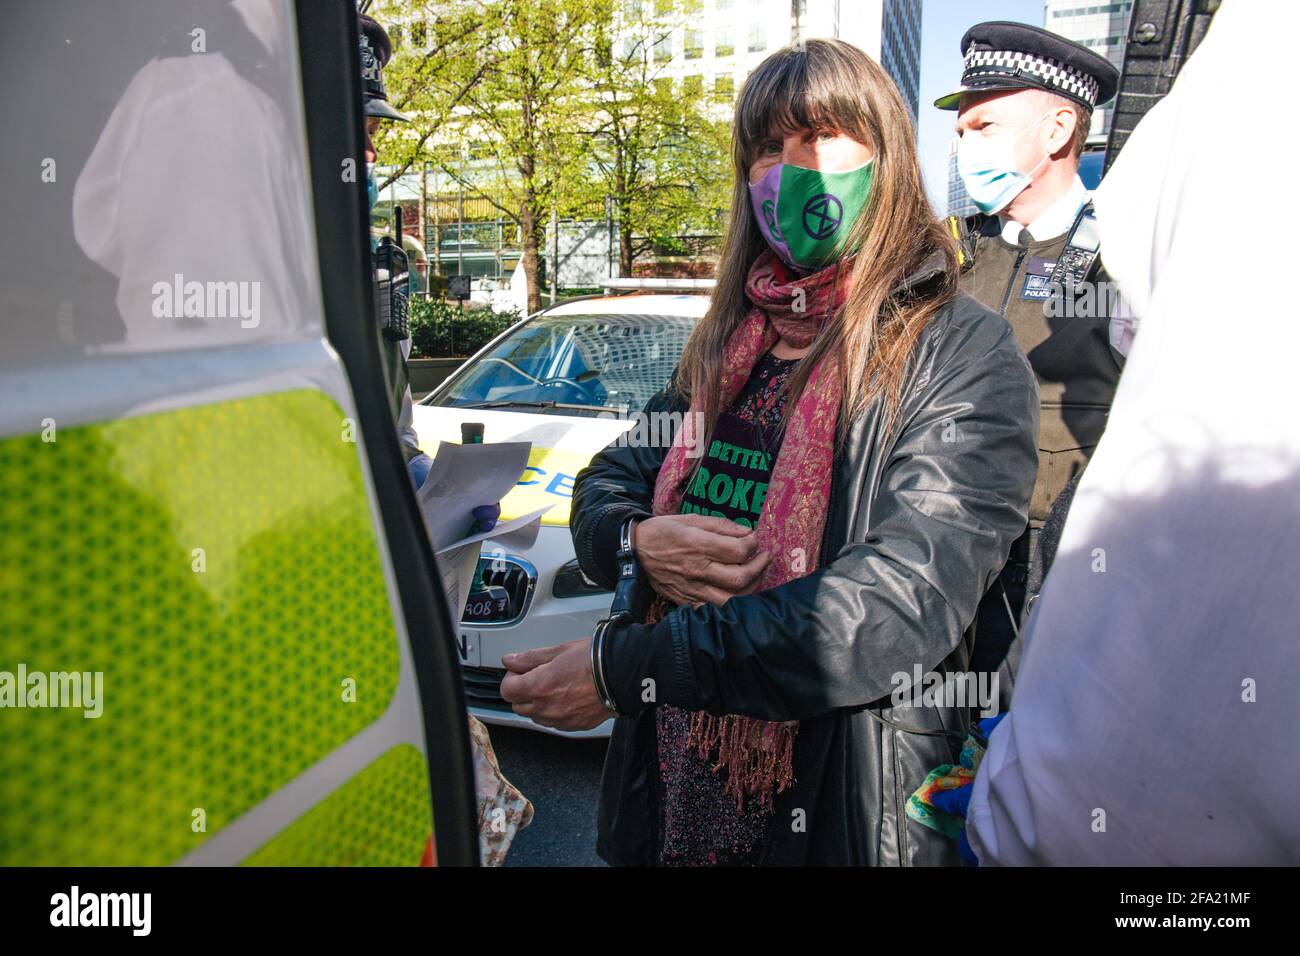 Canary Wharf, Londra, Regno Unito 22 aprile 2021 estinzione le donne della ribellione rompono le finestre alla banca HSBC come parte di una serie di azioni che compongono la ribellione di denaro. Il gruppo ambientale è arrabbiato per gli investimenti della banca di 80 miliardi di sterline in combustibili fossili nel corso degli ultimi 5 anni Foto Stock